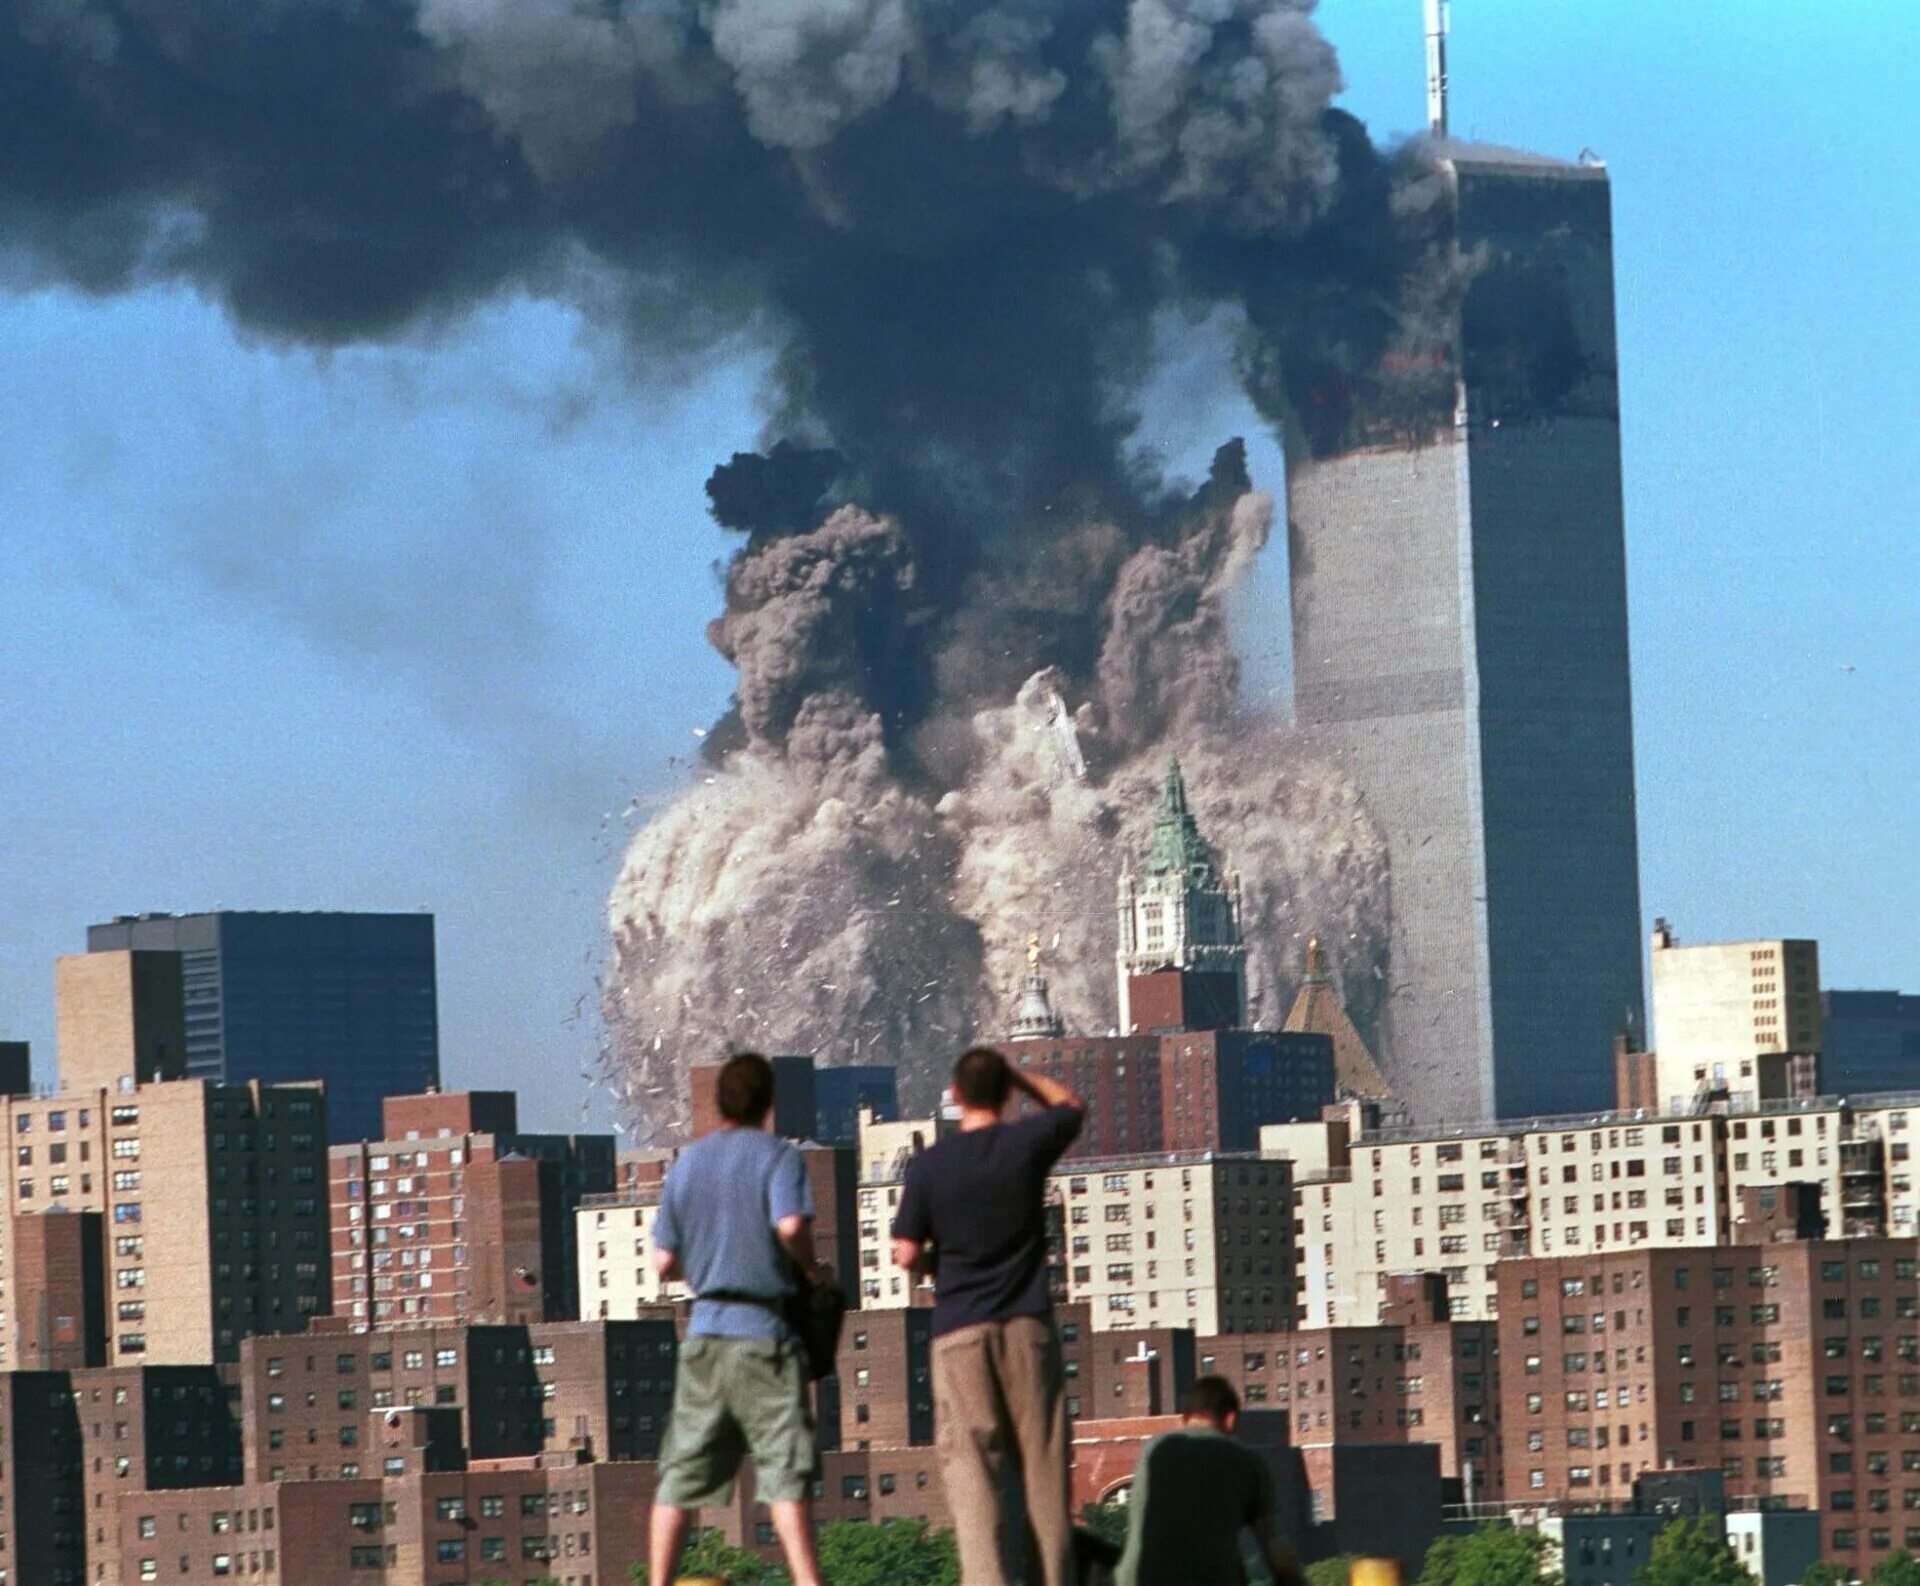 Всемирный торговый центр башни Близнецы 11 сентября. Северная башня ВТЦ 11 сентября. Сколько умерло людей во время теракта